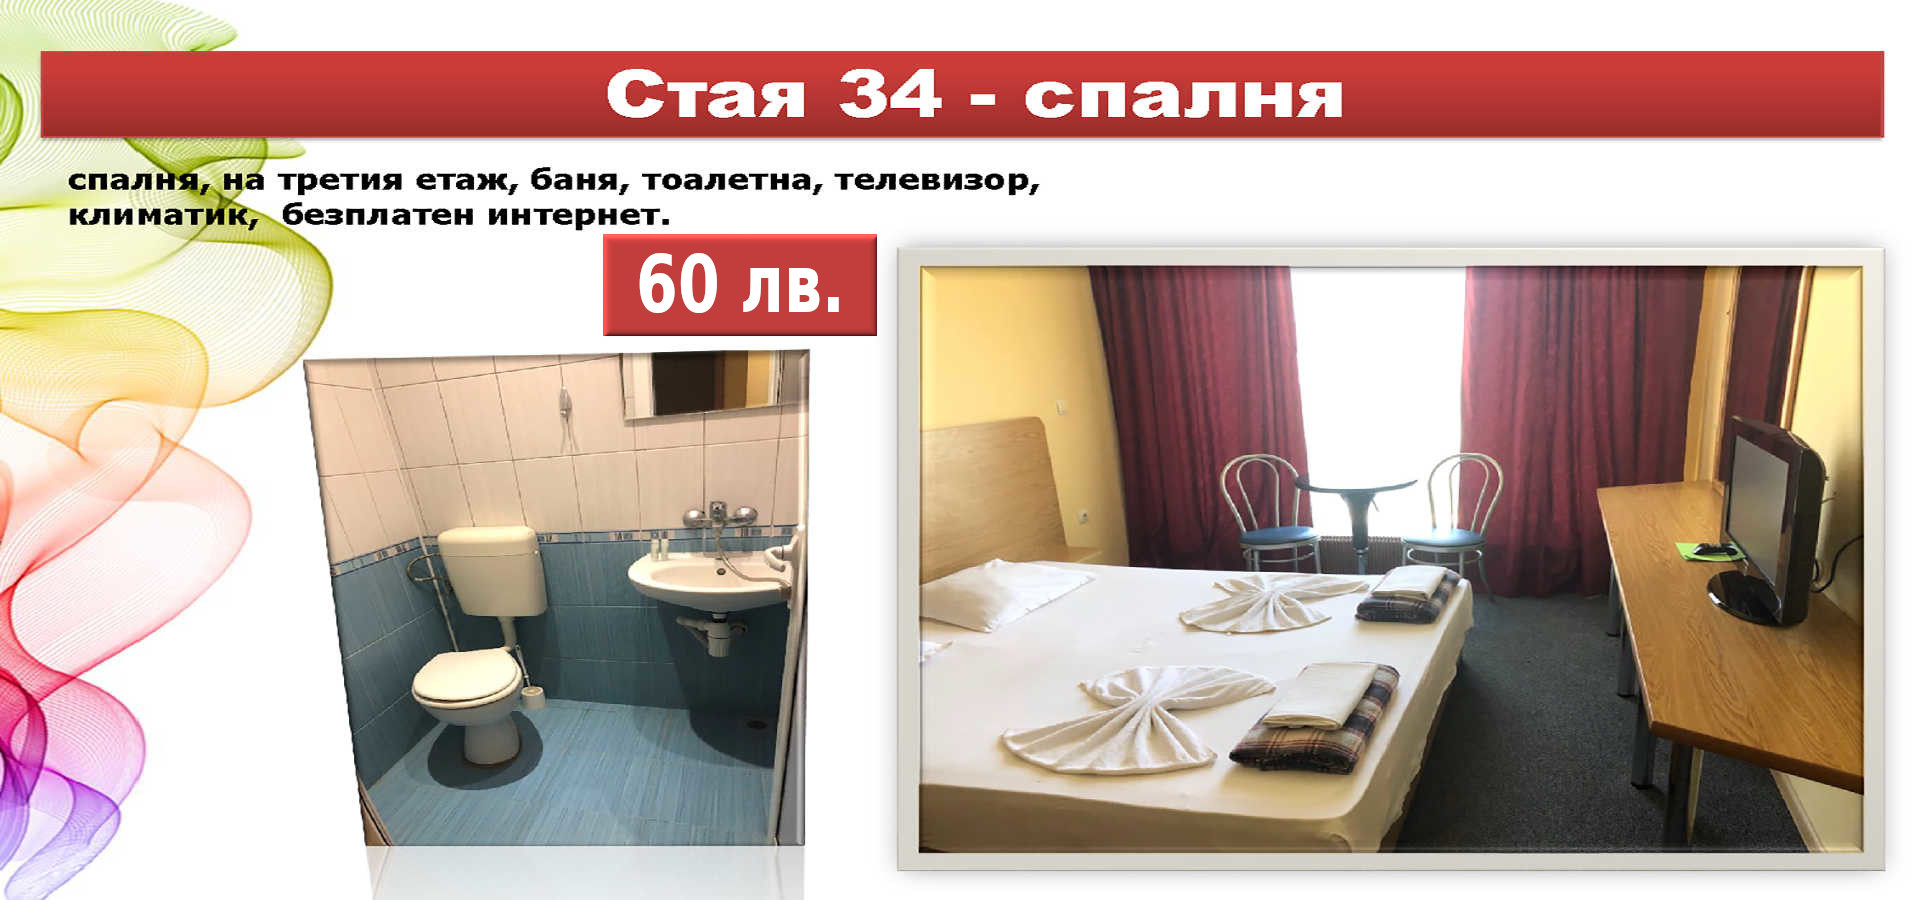 Стая 34 - спалня